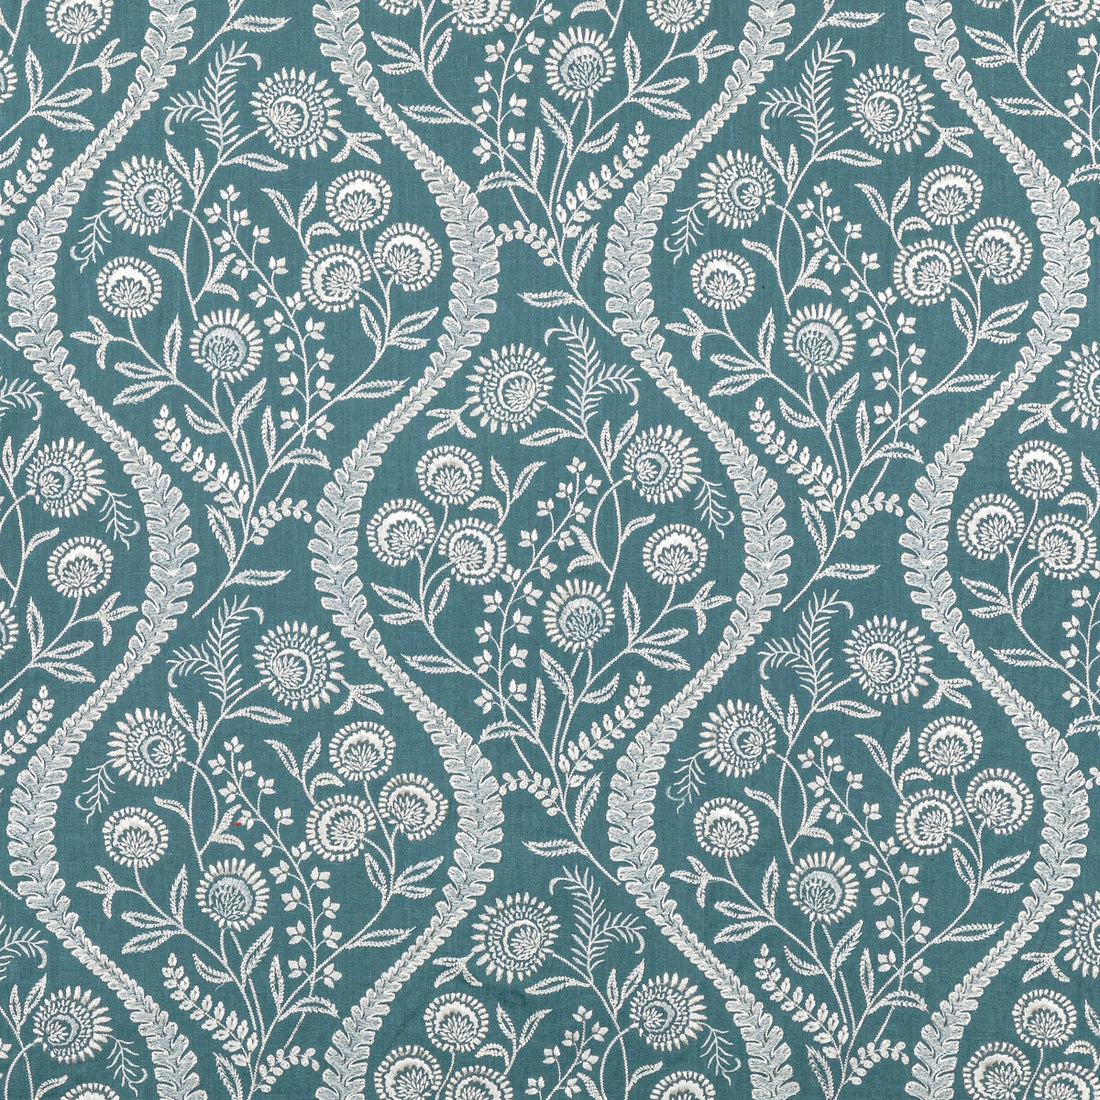 Floriblanca fabric in blue color - pattern 2020219.515.0 - by Lee Jofa in the Oscar De La Renta IV collection